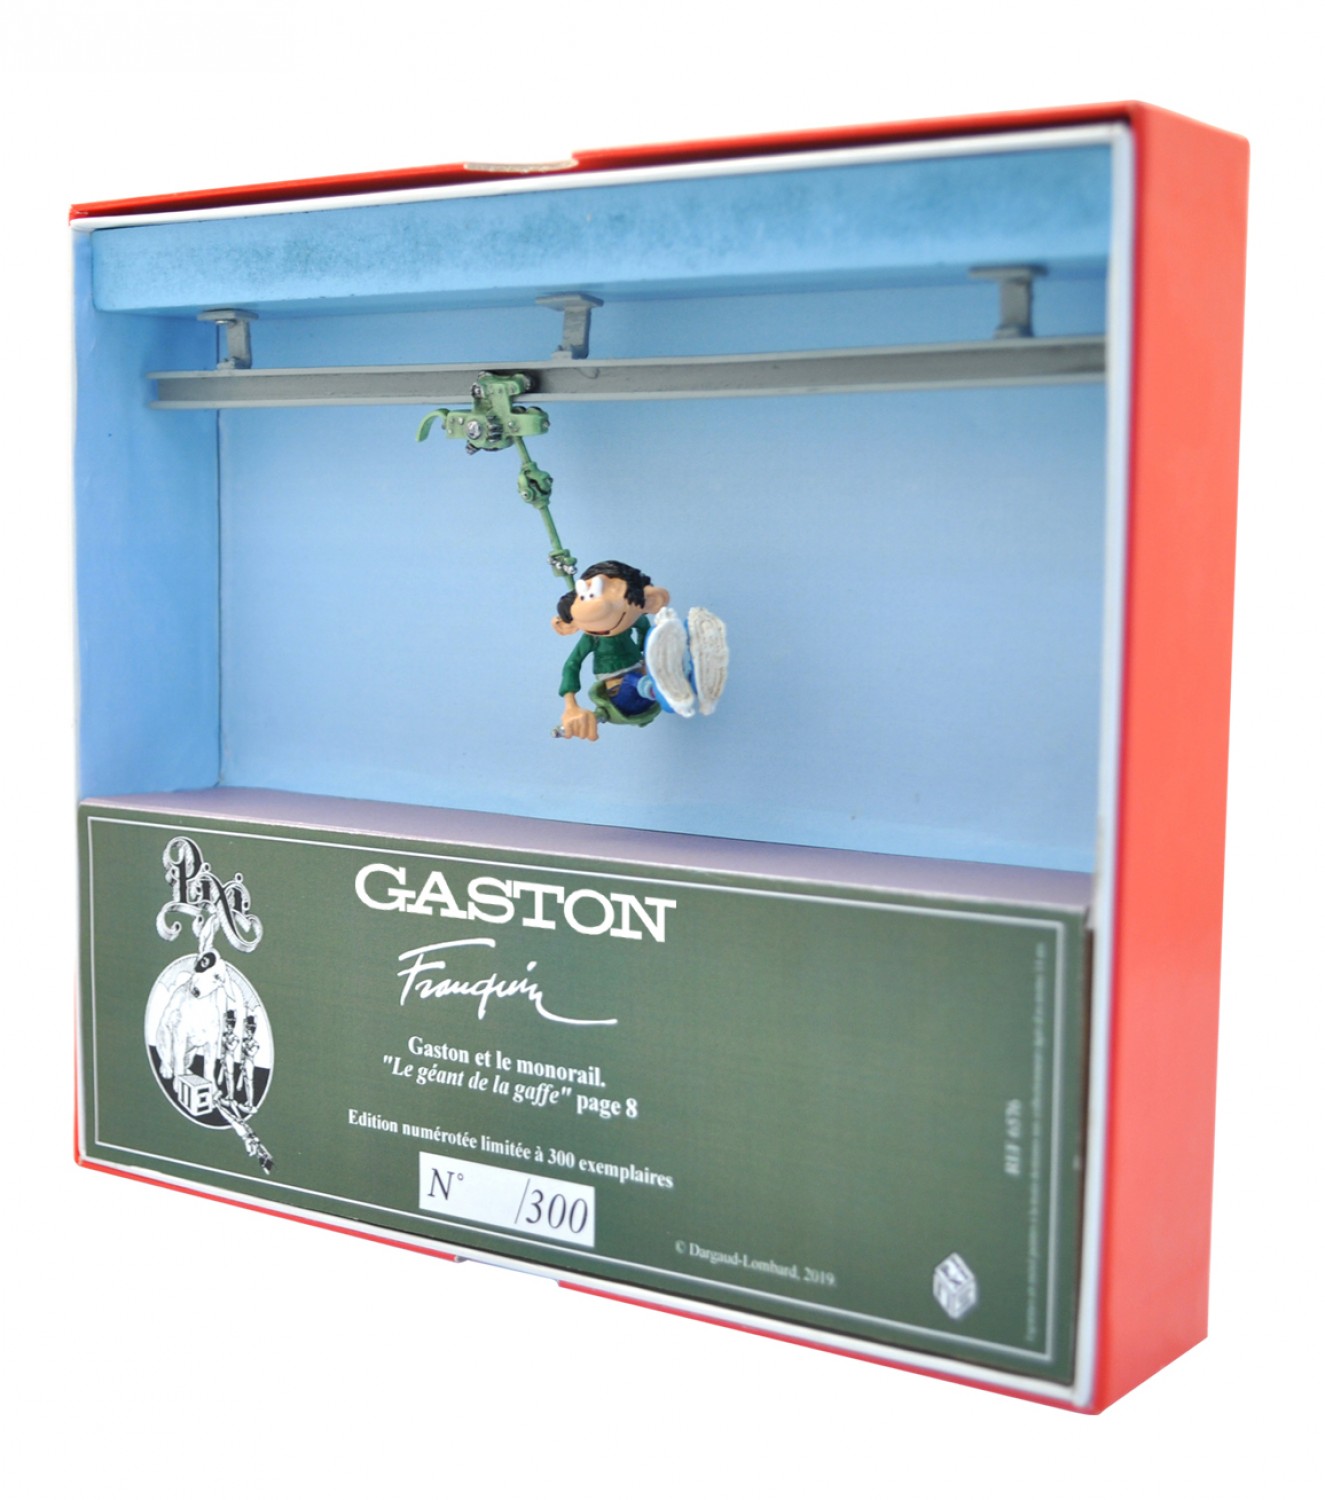 Gaston et le monorail